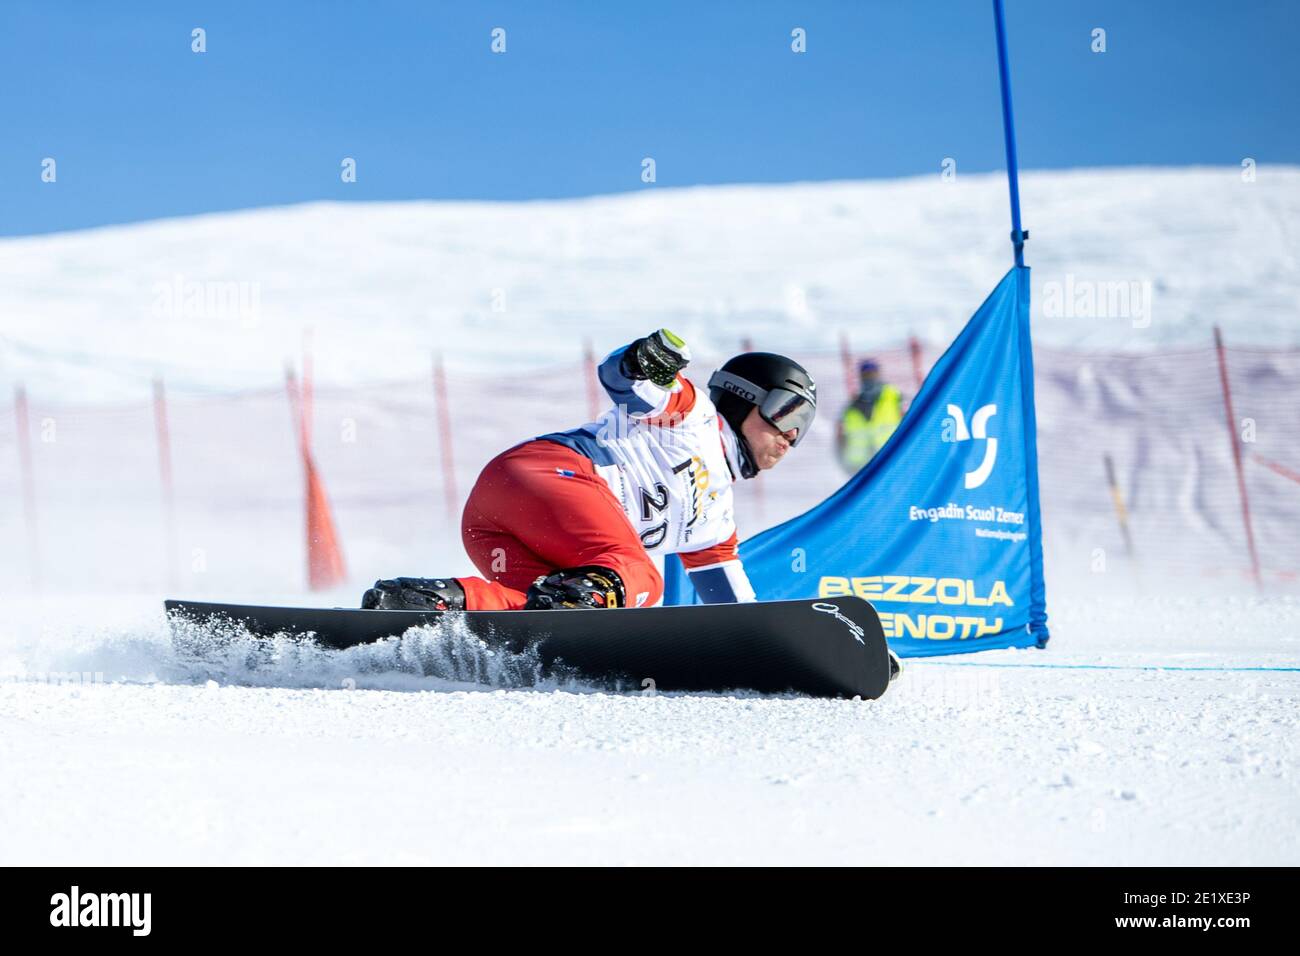 09.01.2021, Scuol, Alpin Worldcup, FIS Snowboard Alpin Worldcup Scuol,  GALMARINI Nevin (SUI Stock Photo - Alamy